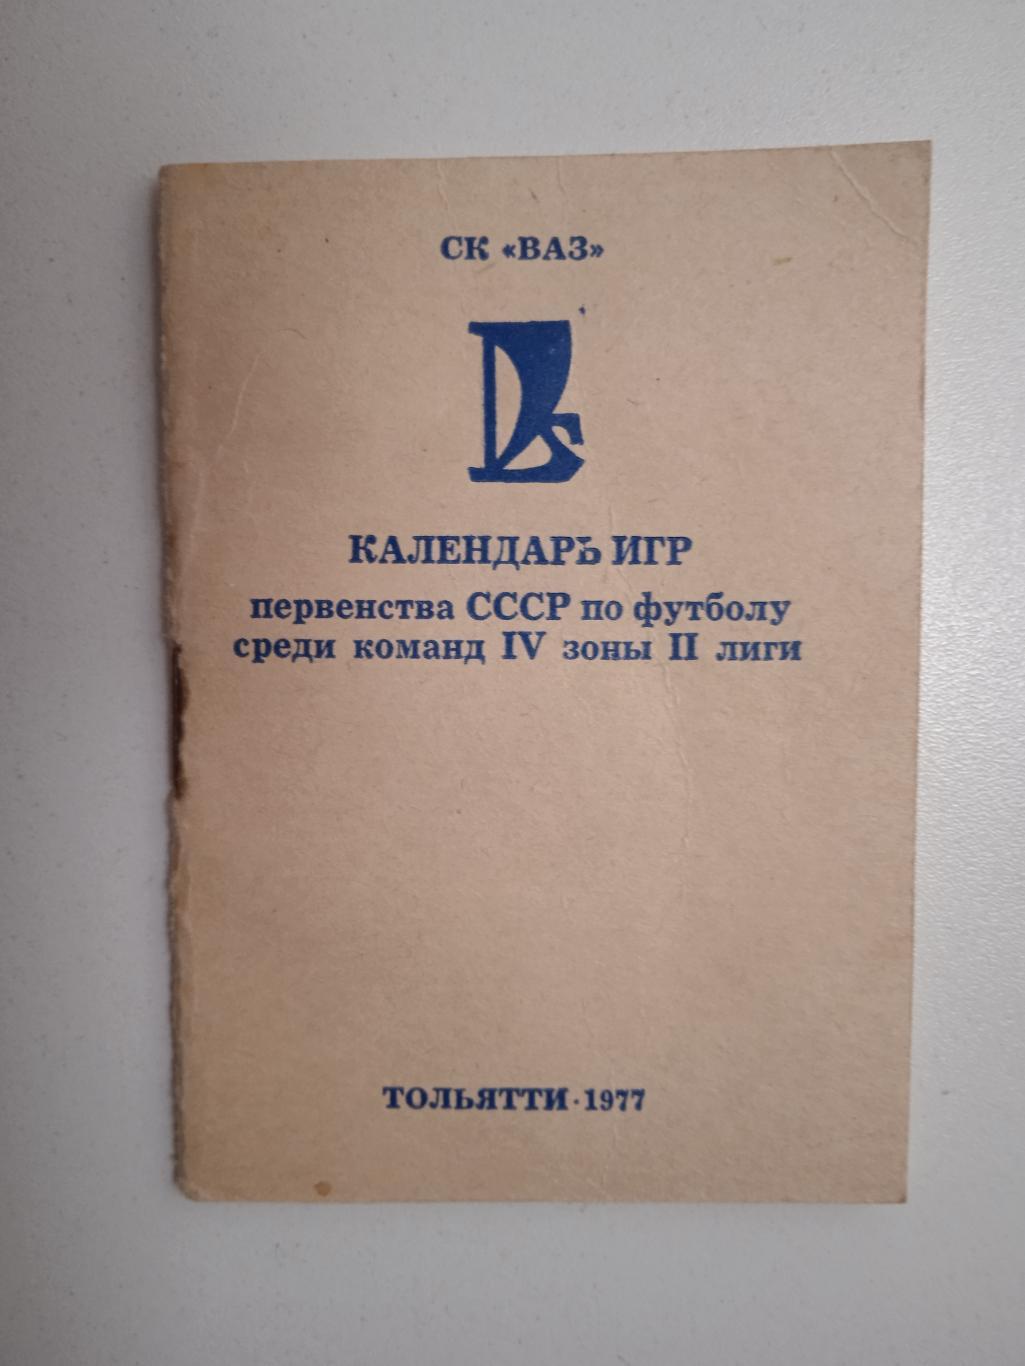 Тольятти 1987 календарь игр